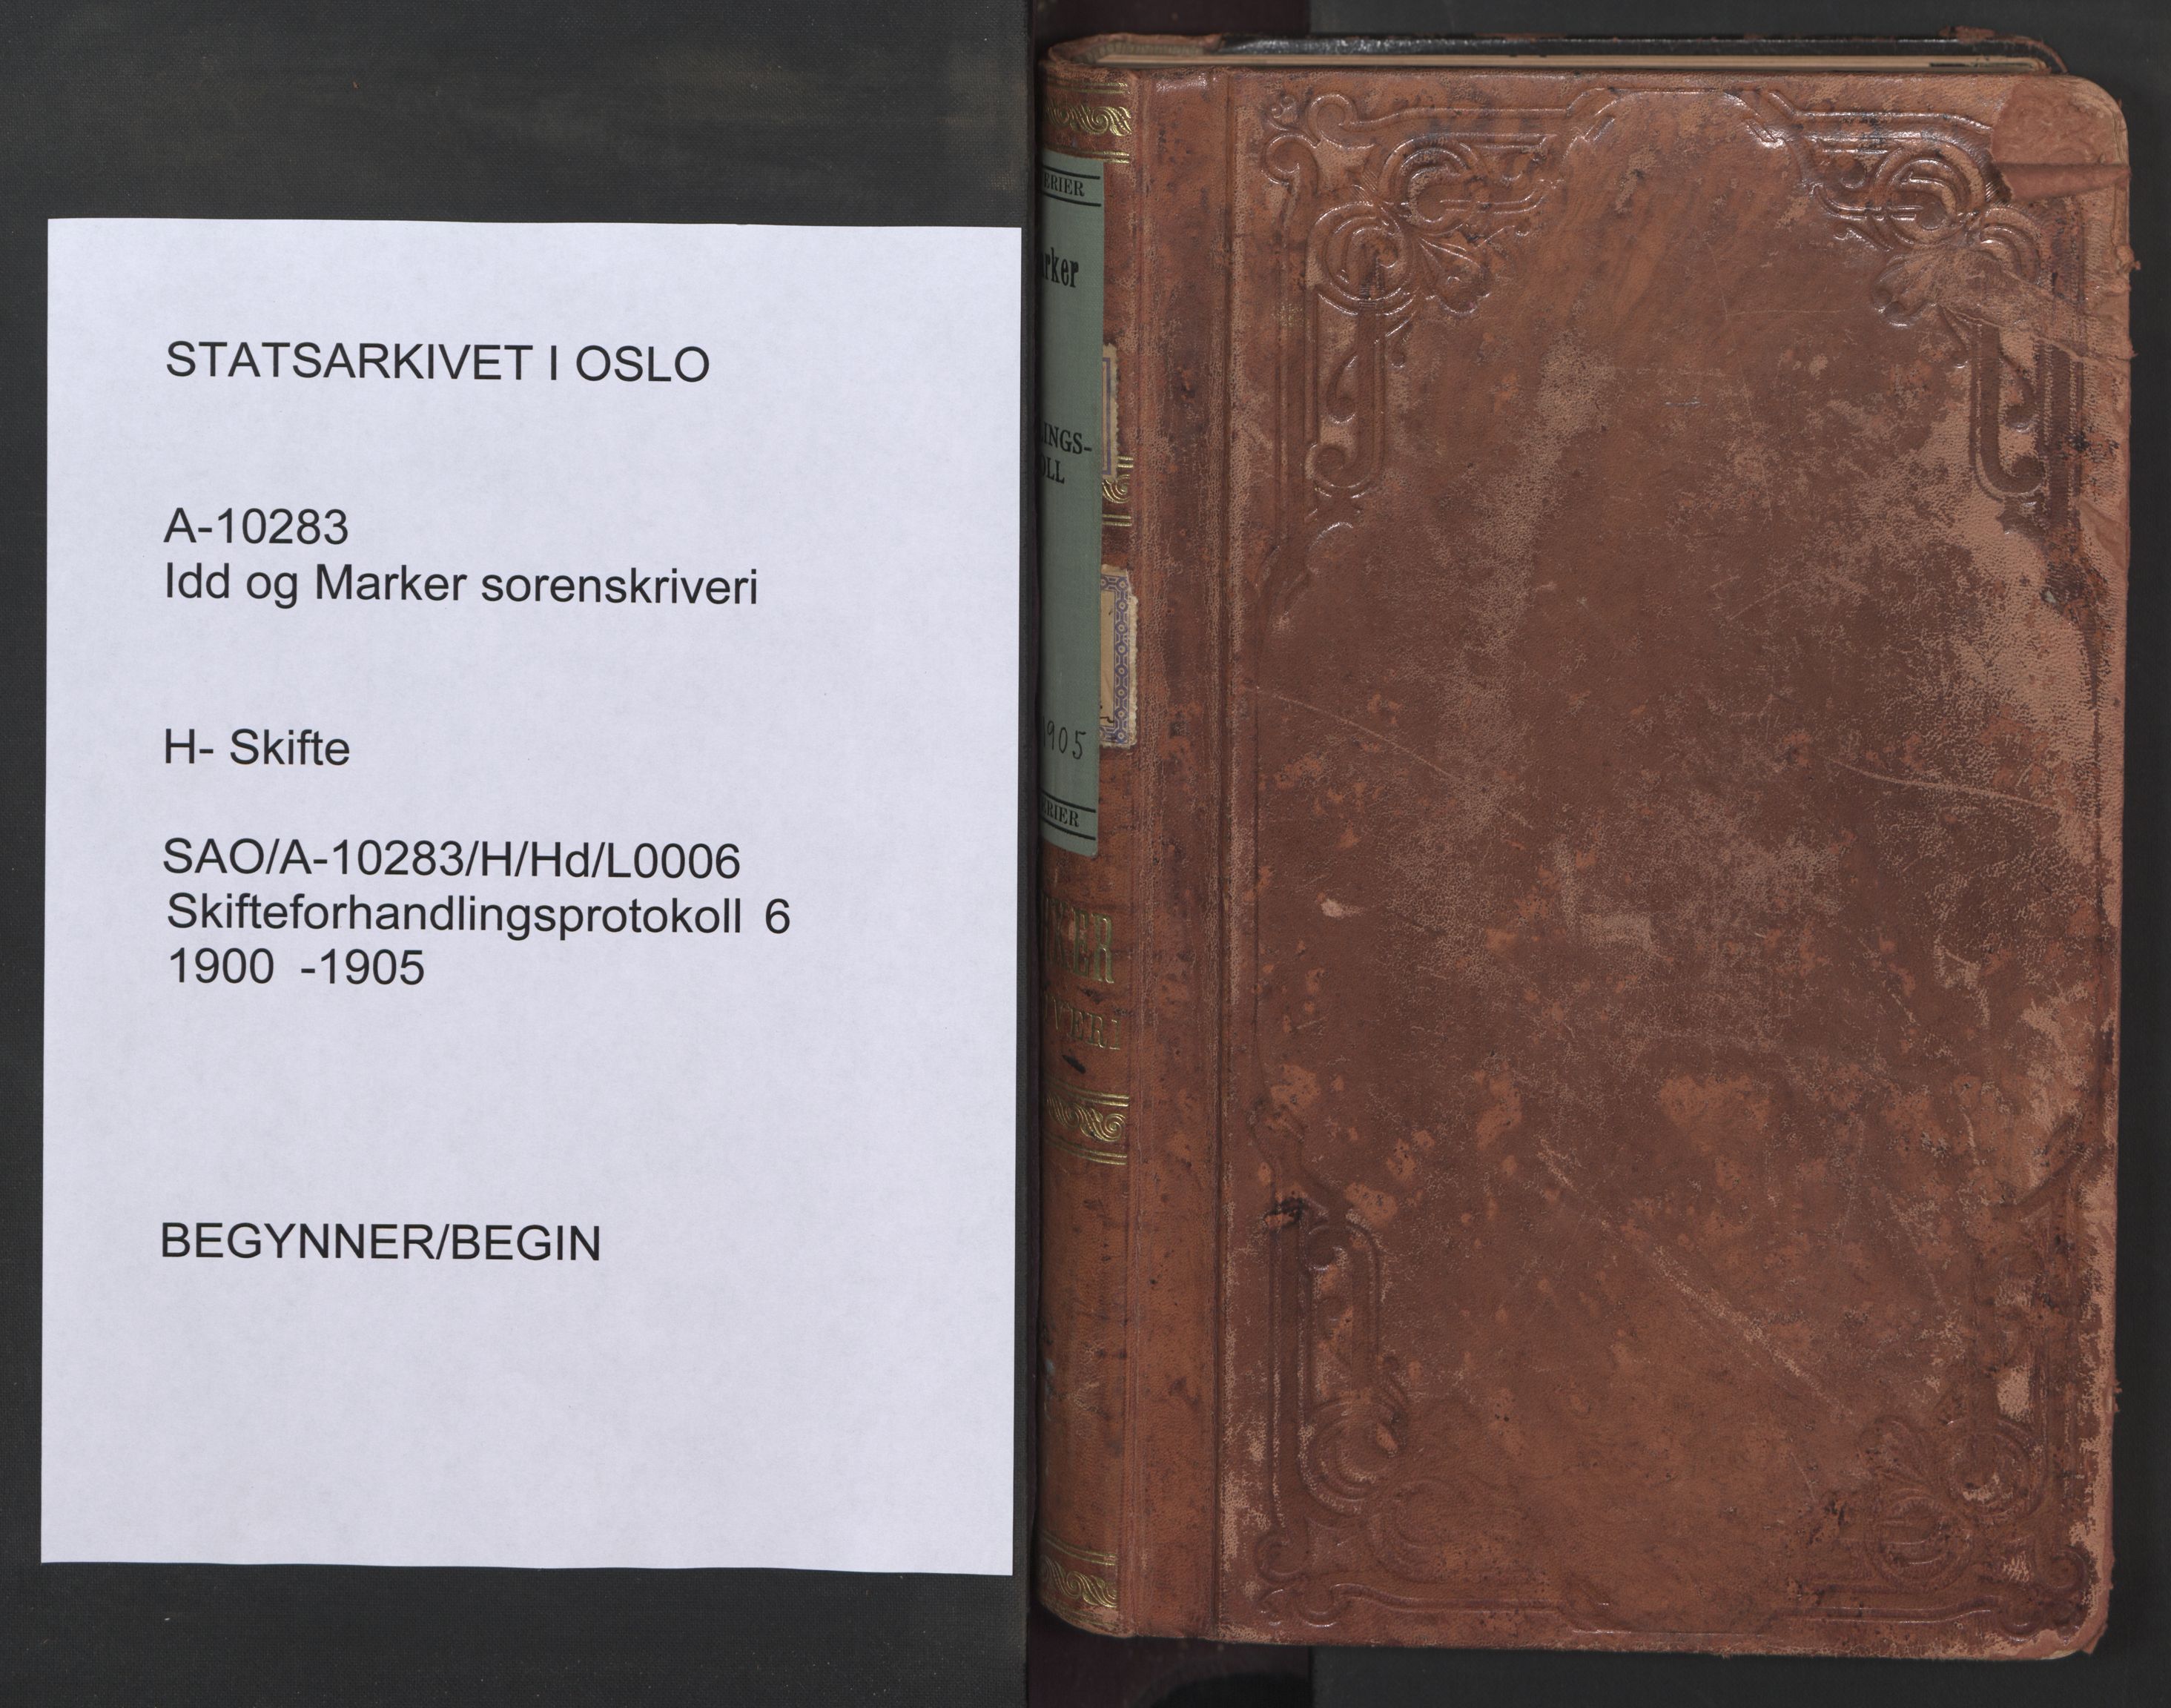 Idd og Marker sorenskriveri, SAO/A-10283/H/Hd/L0006: Skifteforhandlingsprotokoll, 1900-1905